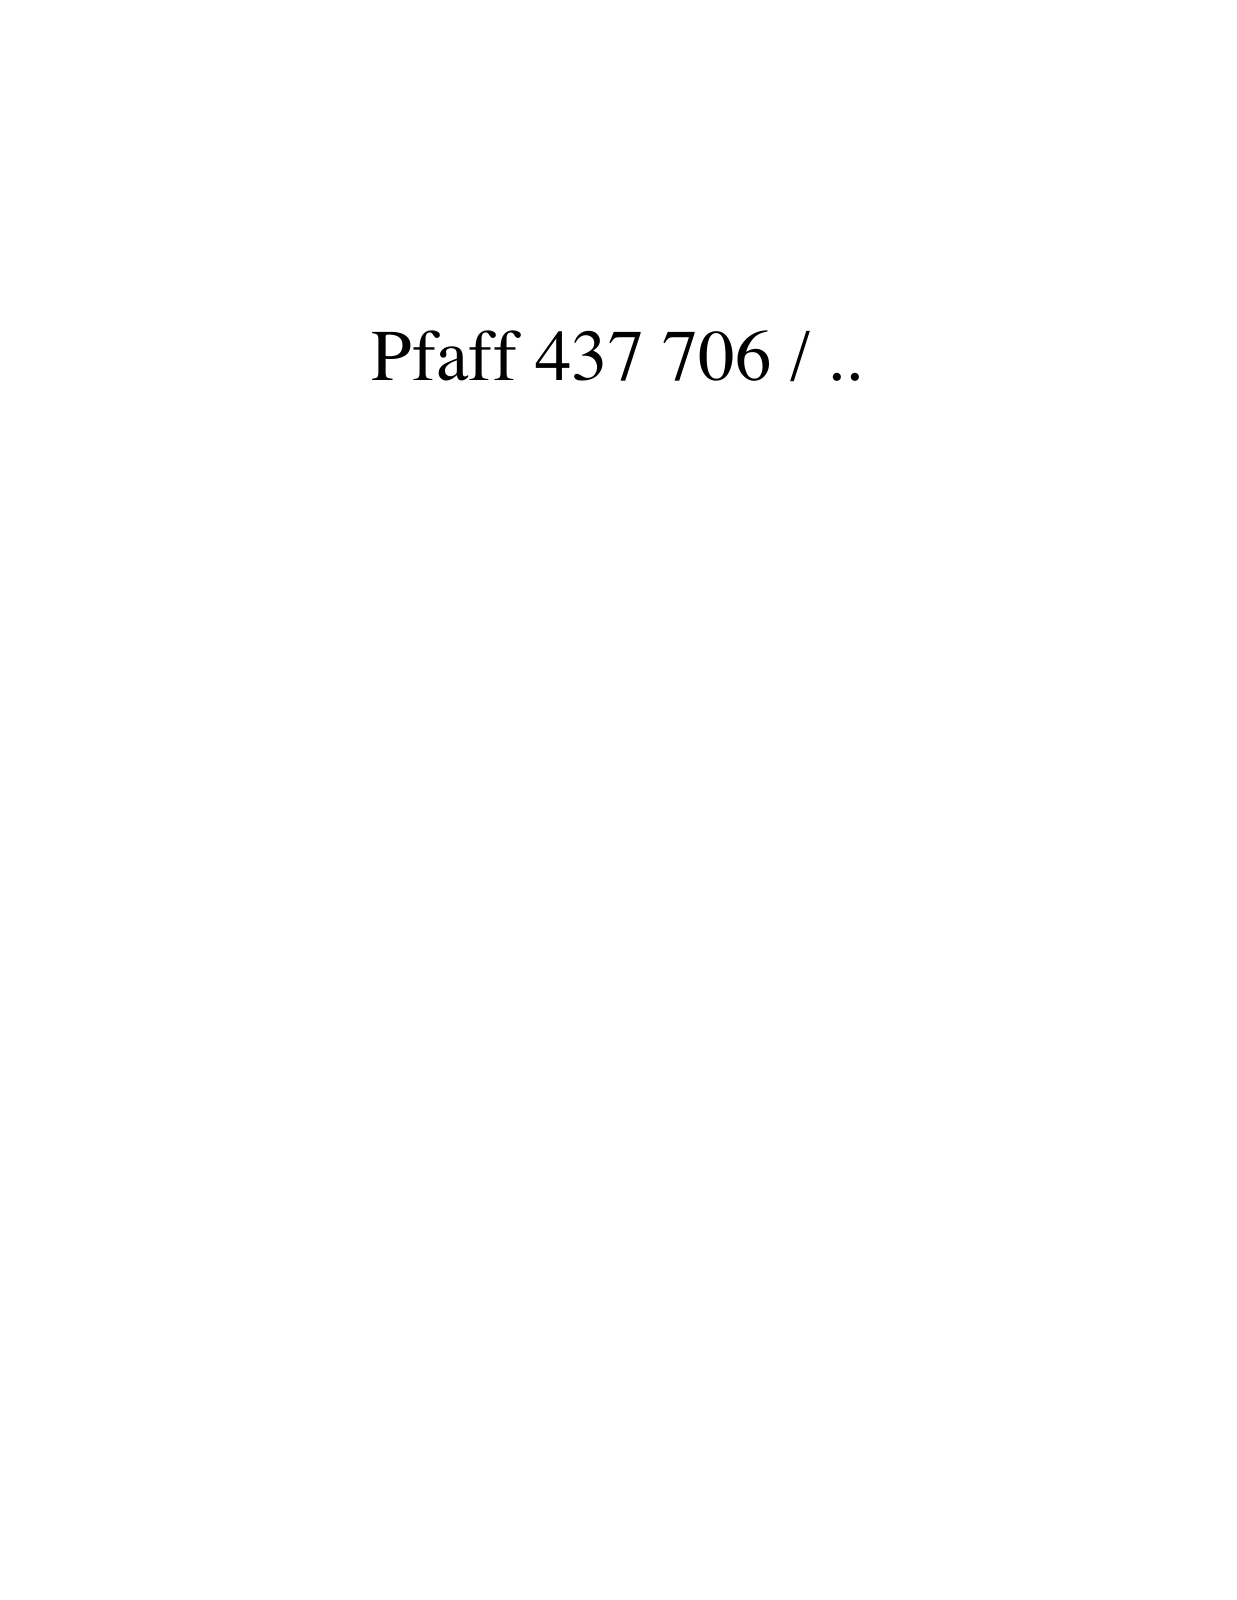 PFAFF 437 706 / .. Parts List